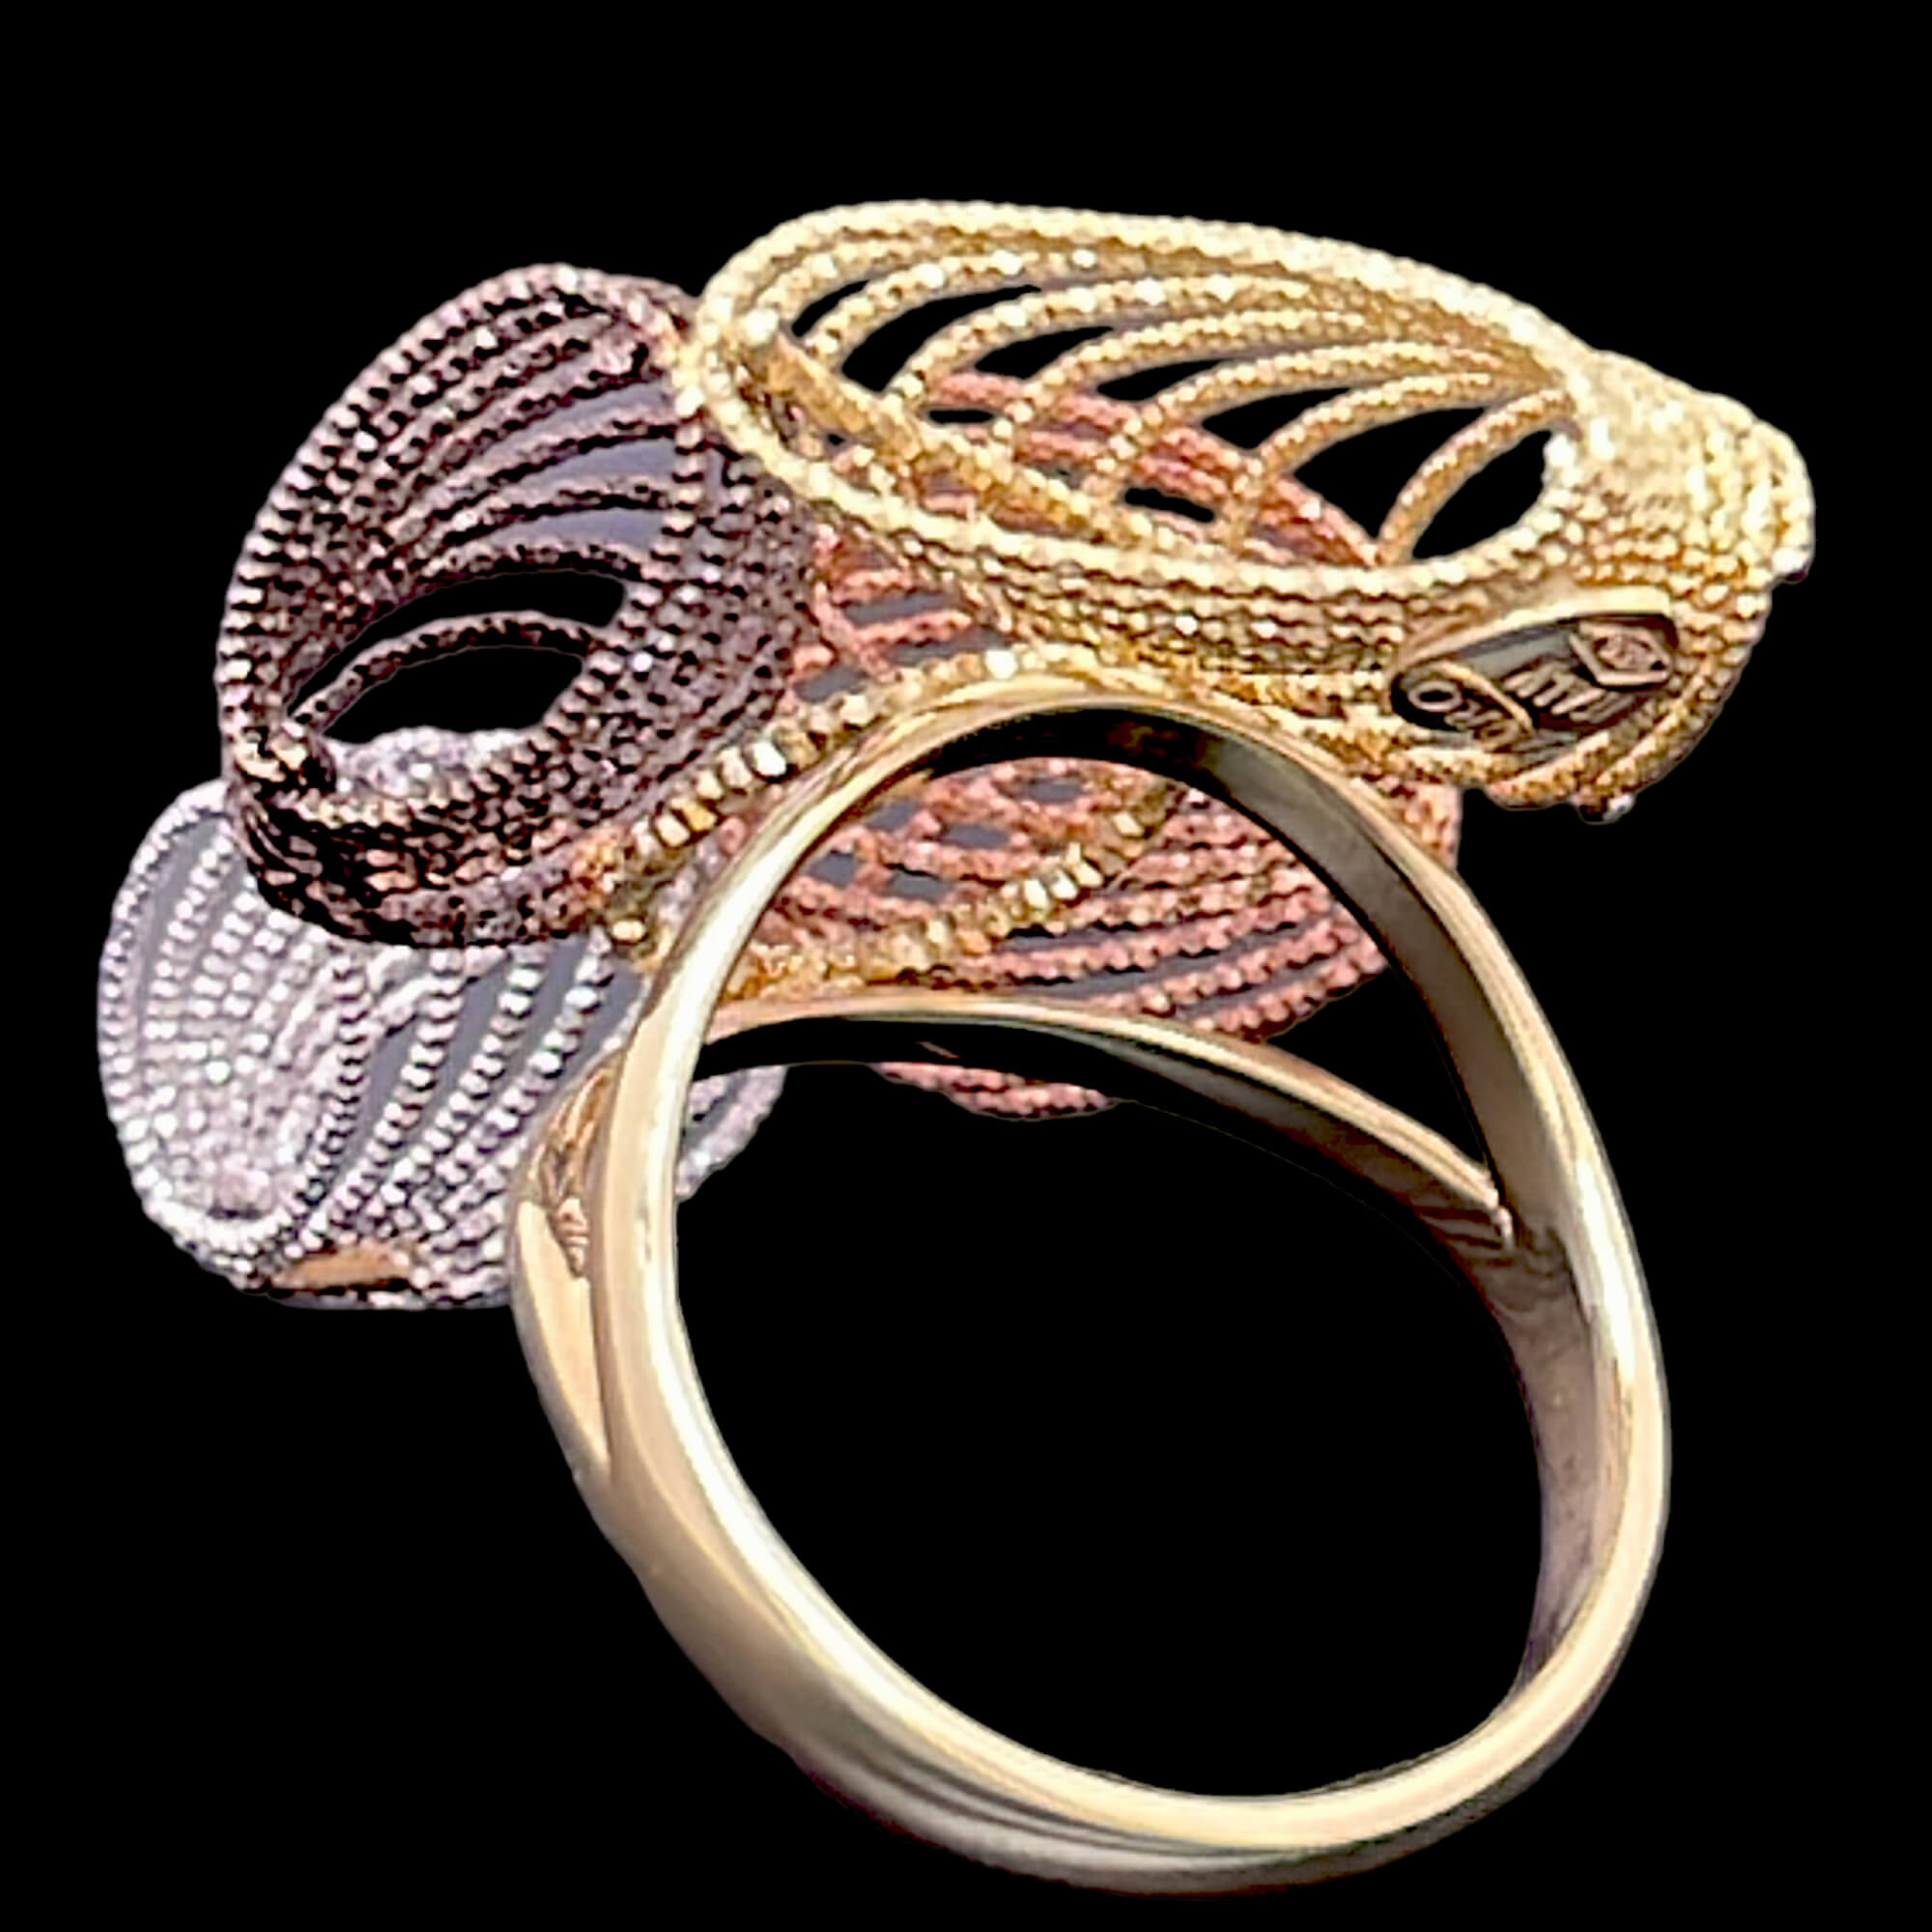 Bearbeiteter vierfarbiger Ring aus 18kt Gold